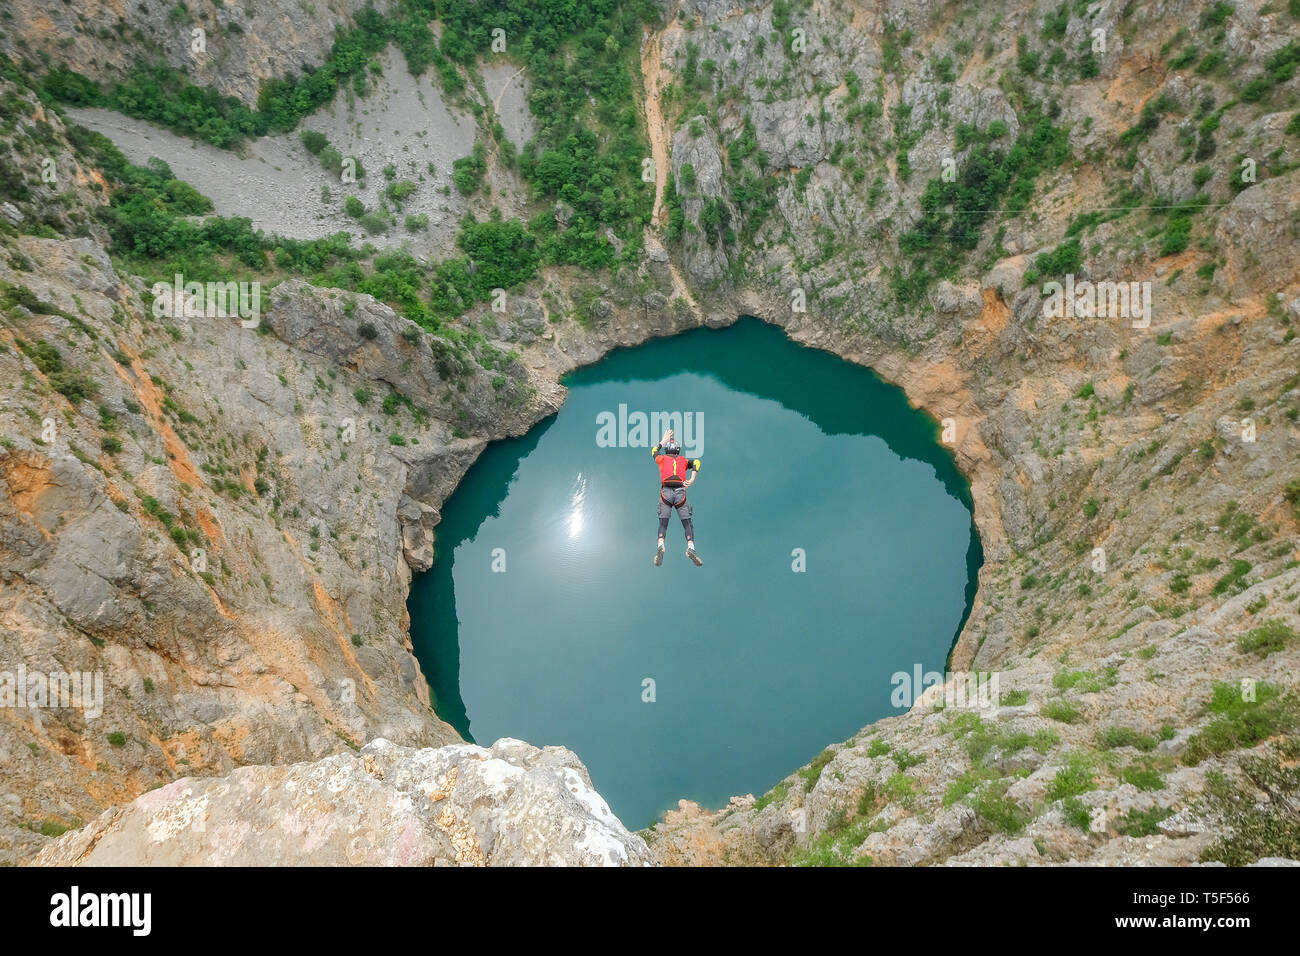 IMOTSKI, CROATIE - Mai 03 : un homme avec un saut en parachute au-dessus du lac rouge, Split-dalmatie, Imotski, la Croatie le 03 mai, 2018 à Imotski, Croatie. Banque D'Images